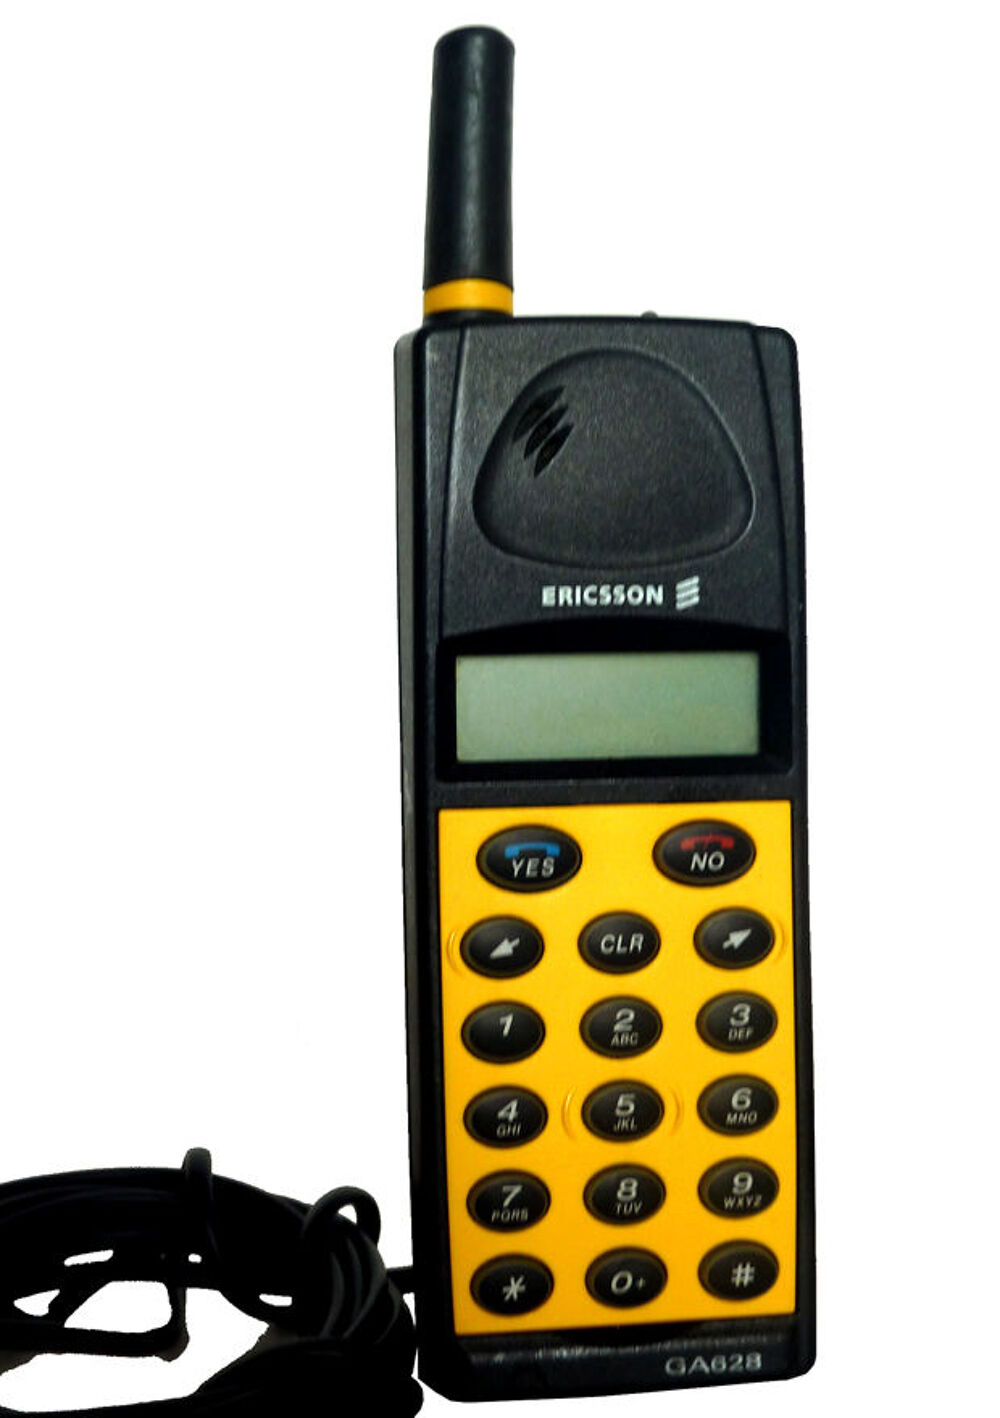 T&eacute;l&eacute;phone portable Ericson Tlphones et tablettes